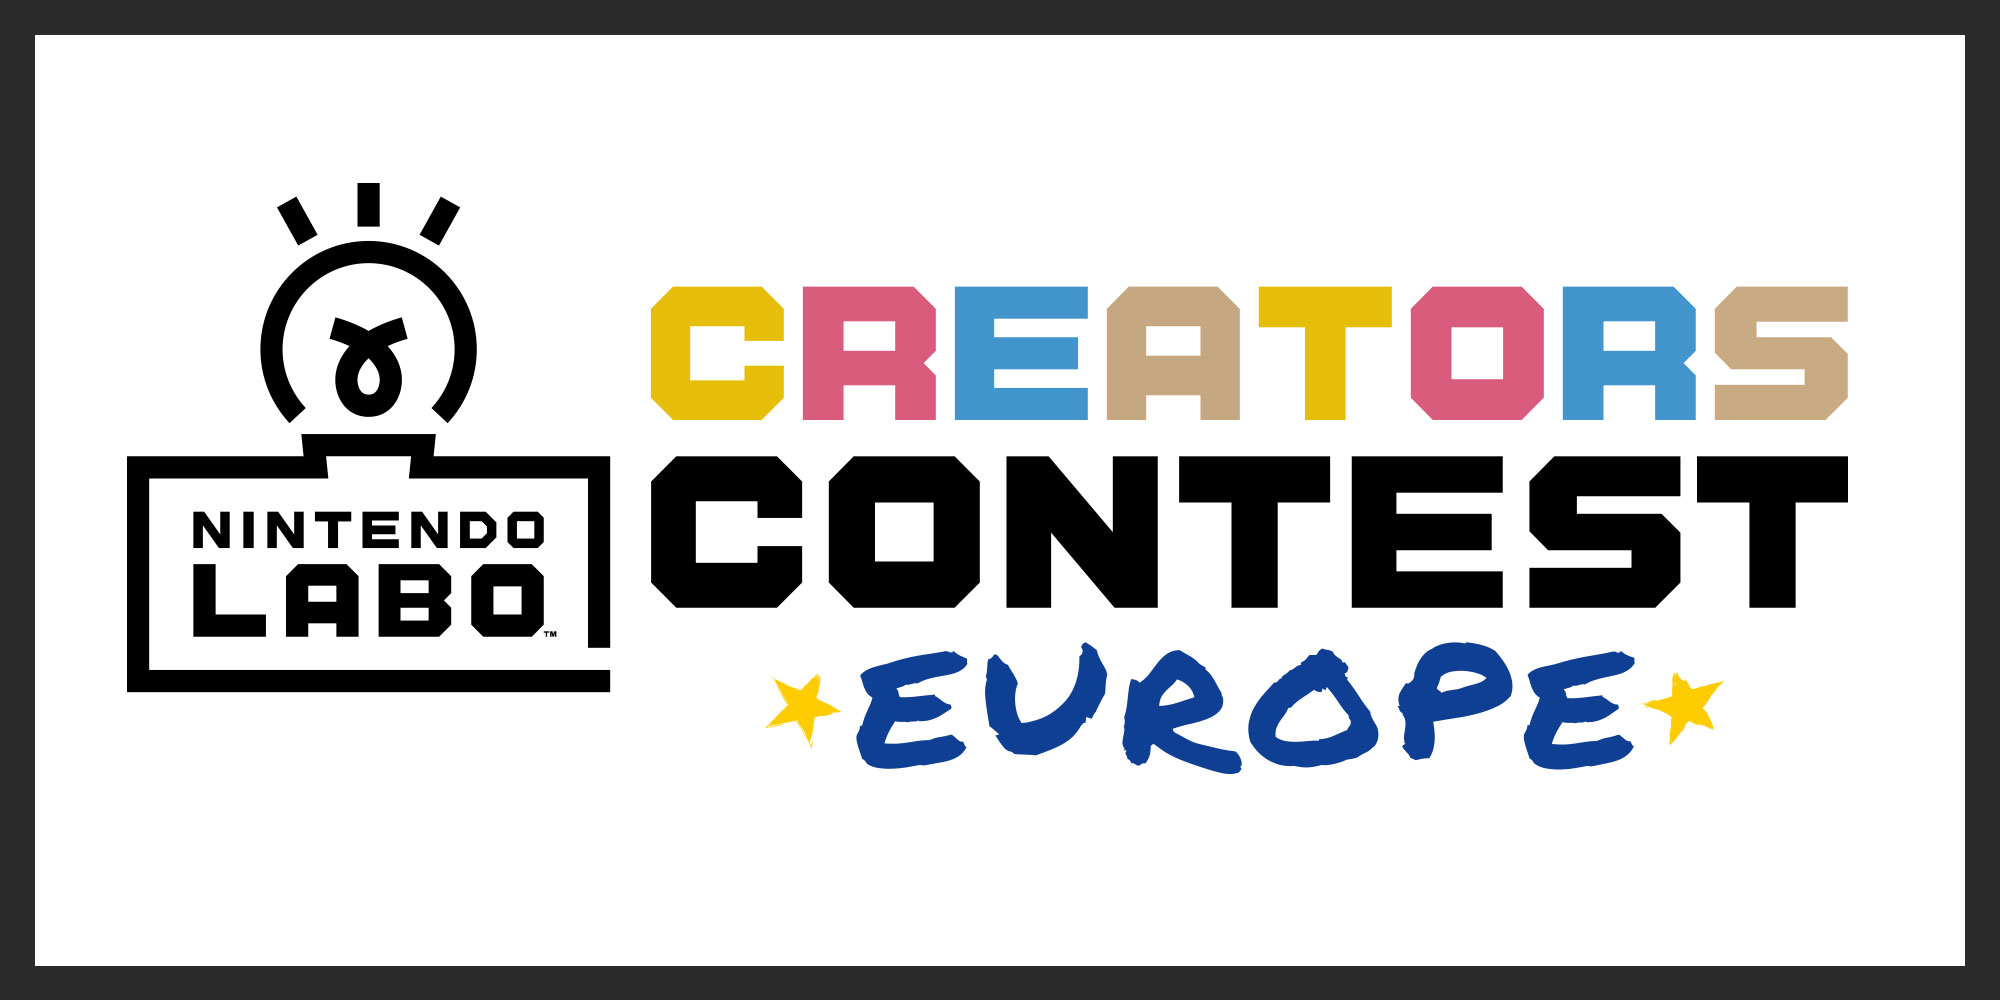 Il Nintendo Labo Creators Contest arriva in Europa!